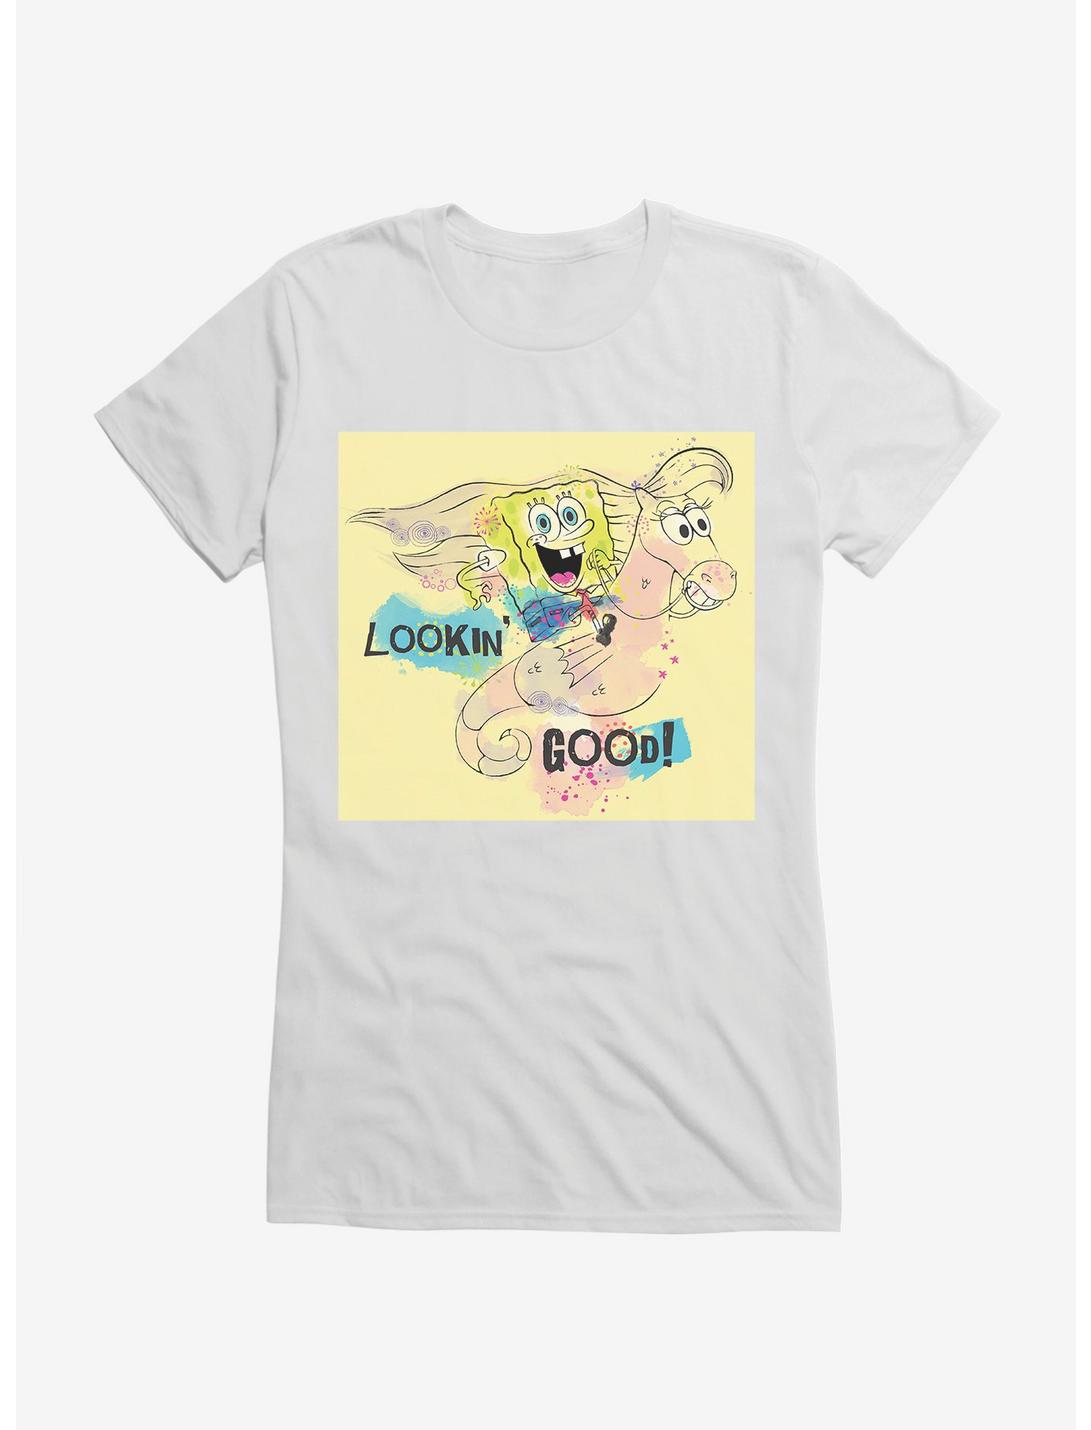 SpongeBob SquarePants Lookin' Good Seahorse Ride Girls T-Shirt, , hi-res